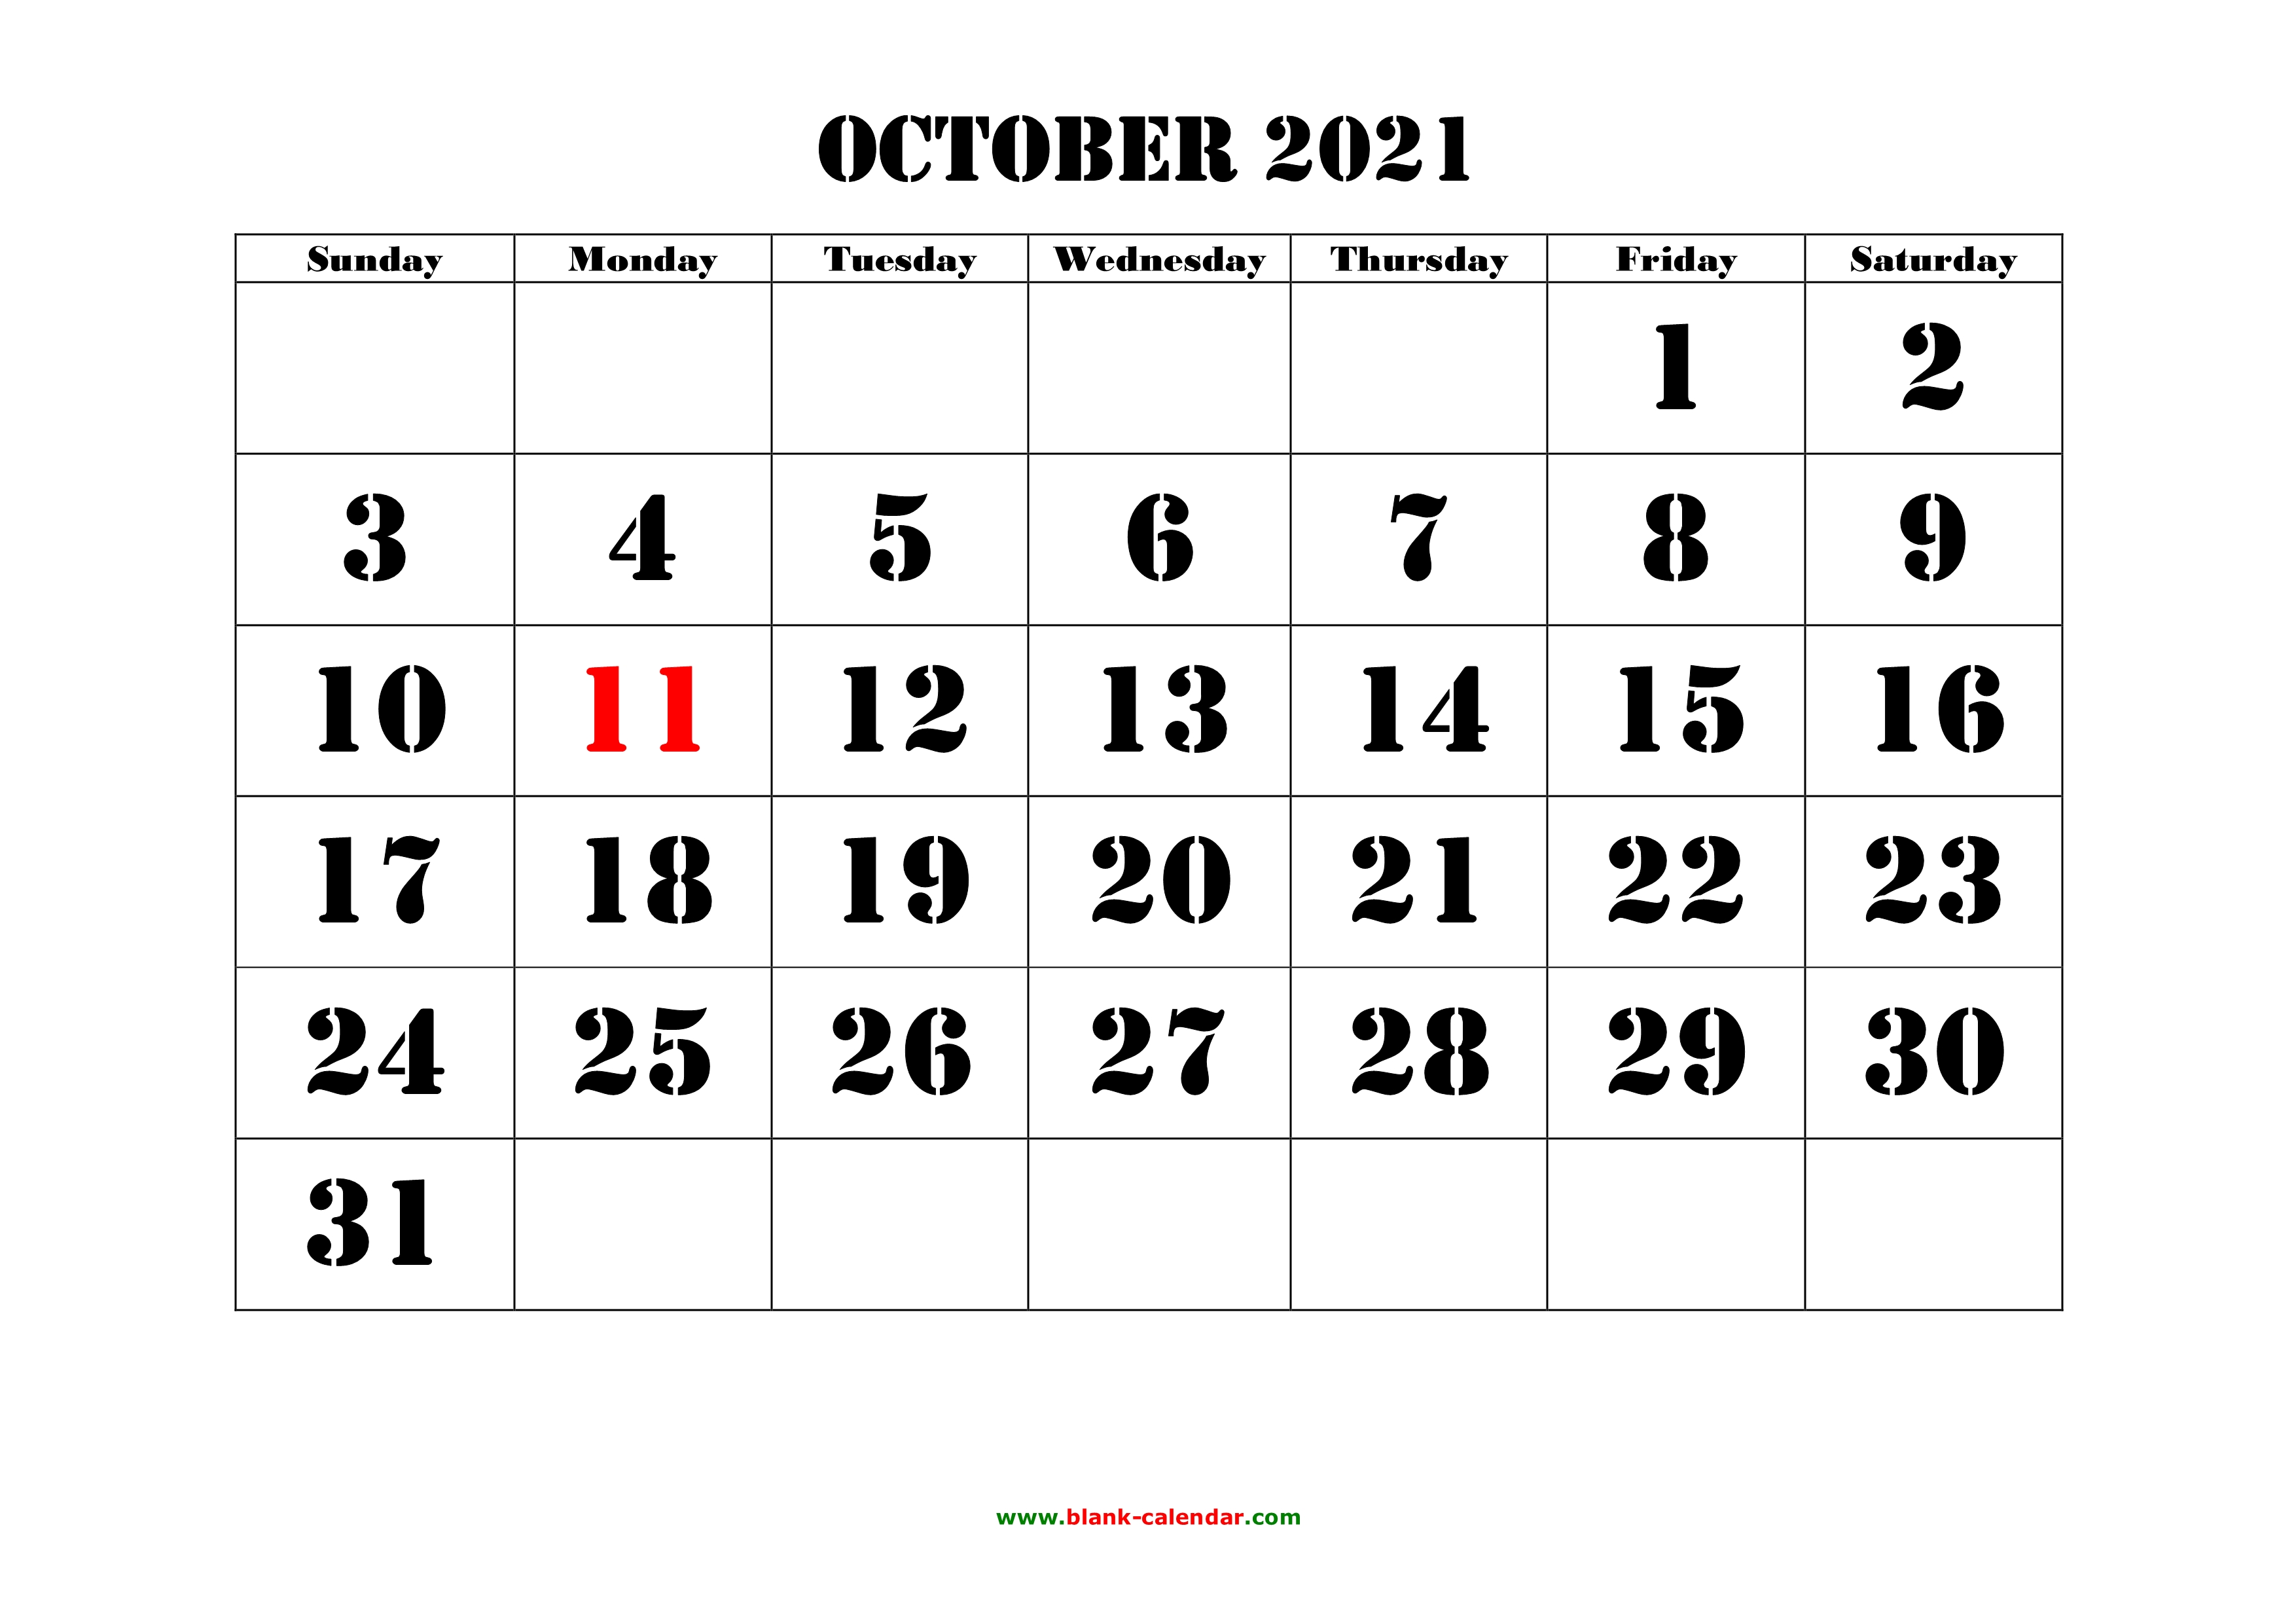 printable calendar october 2021 landscape Free Download Printable October 2021 Calendar Large Font Design Holidays On Red printable calendar october 2021 landscape